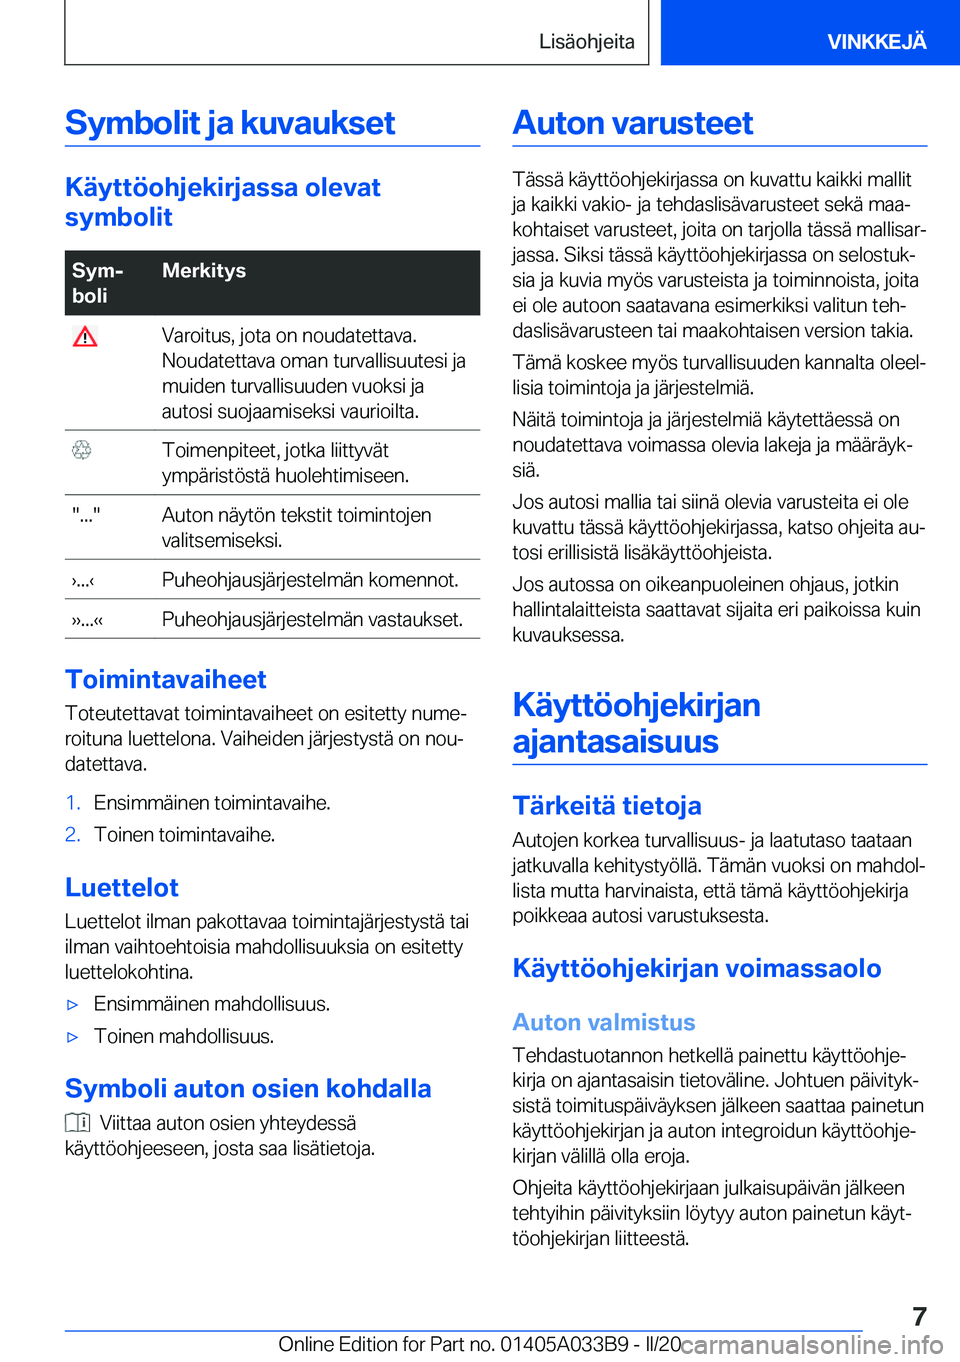 BMW M8 GRAN COUPE 2020  Omistajan Käsikirja (in Finnish) �S�y�m�b�o�l�i�t��j�a��k�u�v�a�u�k�s�e�t
�K�